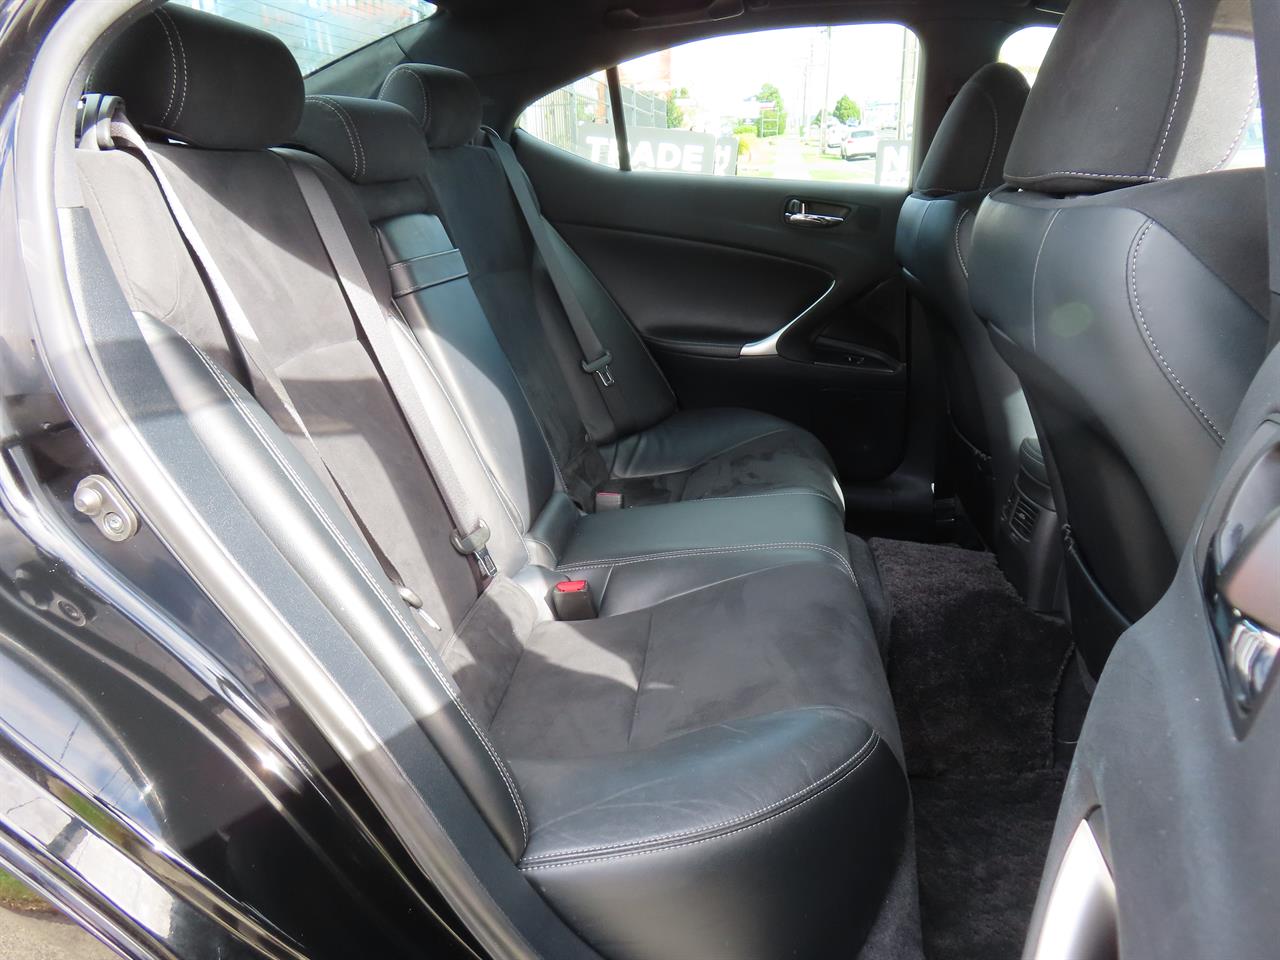 2011 Lexus IS 250